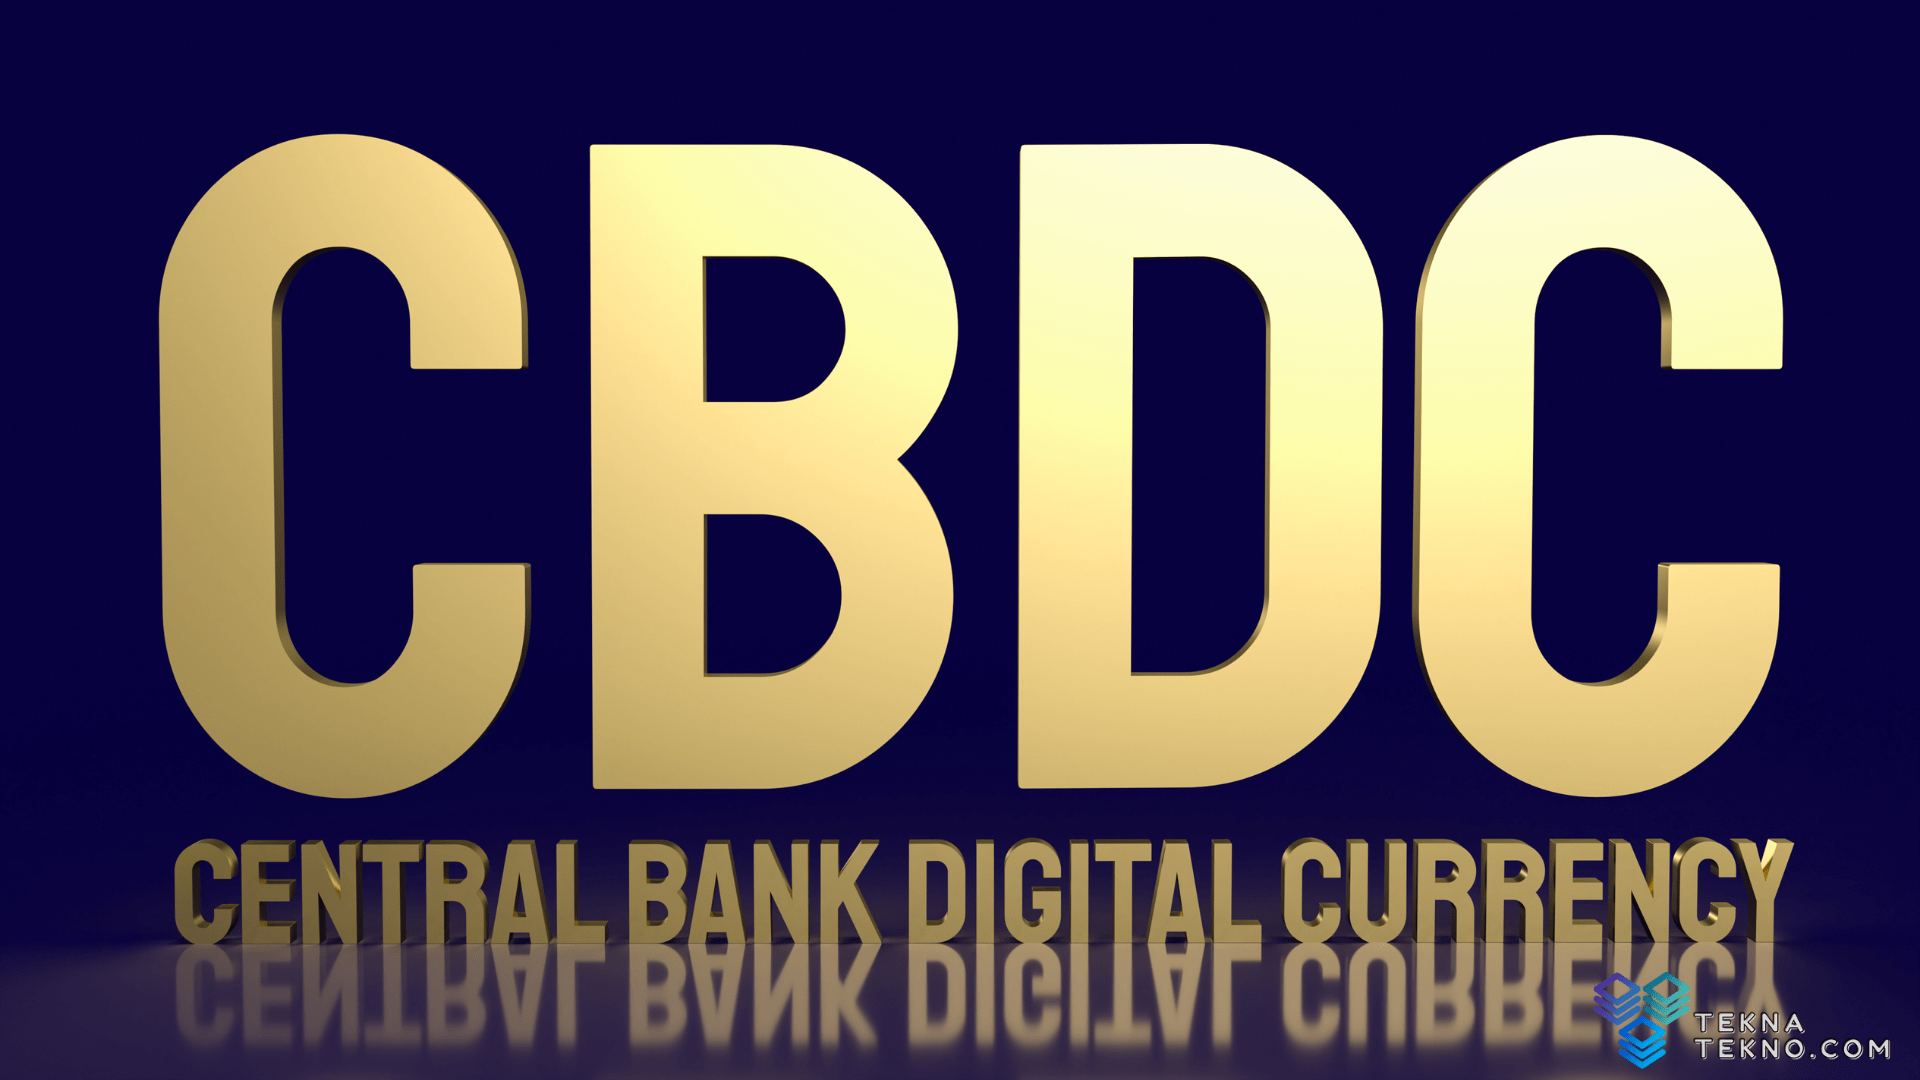 Bank Indonesia Pertimbangkan Uang Digital CBDC